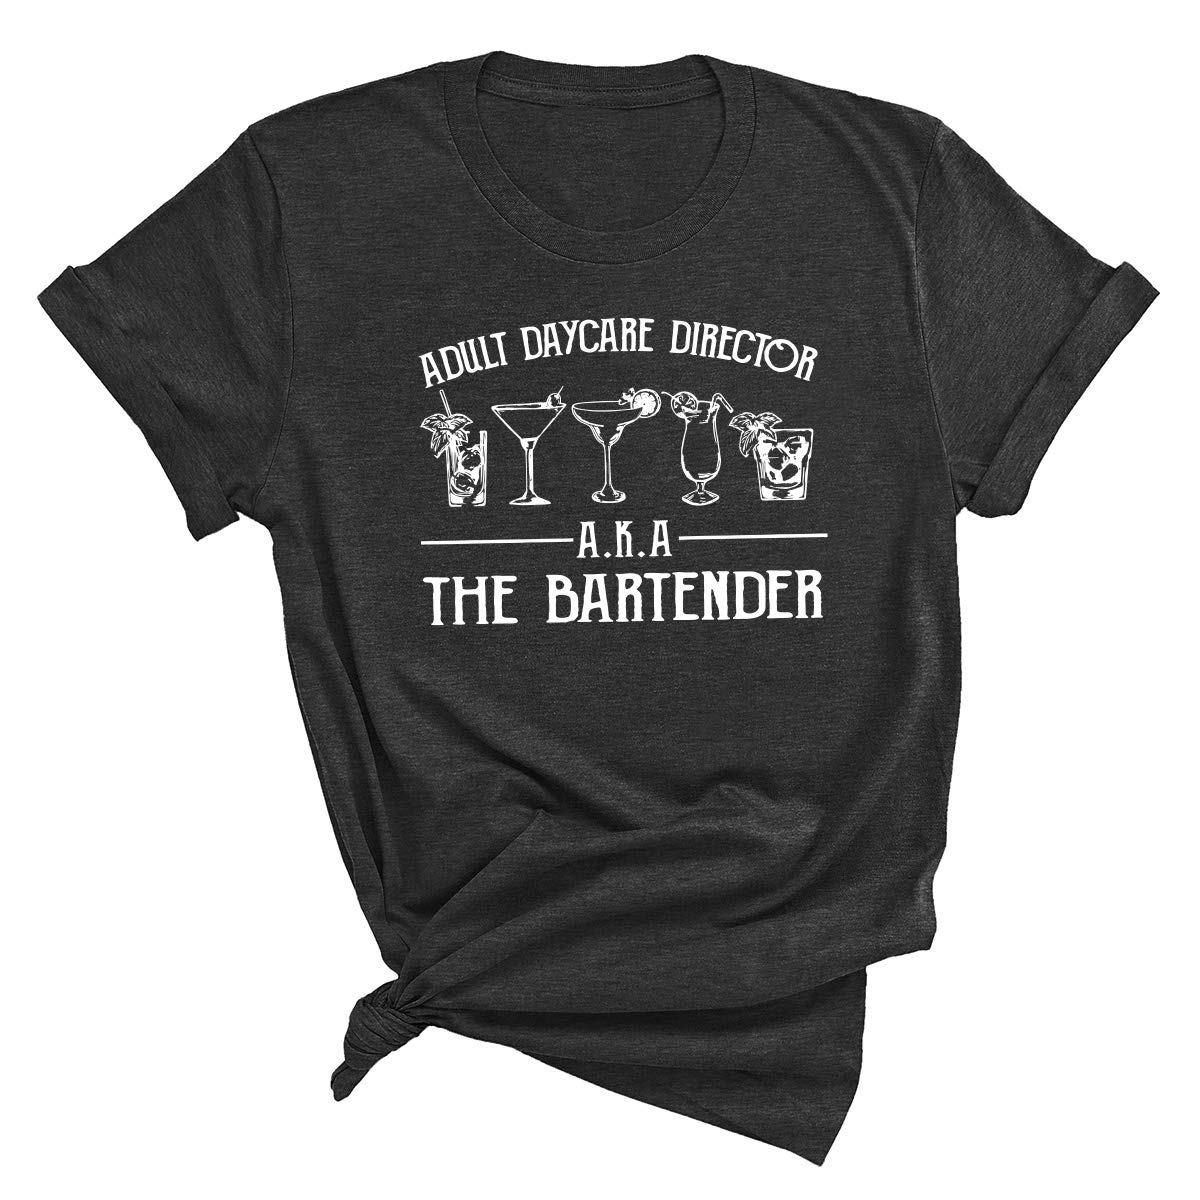 Funny Bartending T-Shirt, Bartender Shirt, Bartender Gift, Barista Shirt, Barmen Tee, Adult Daycare Director A.K.A The Bartender T Shirt